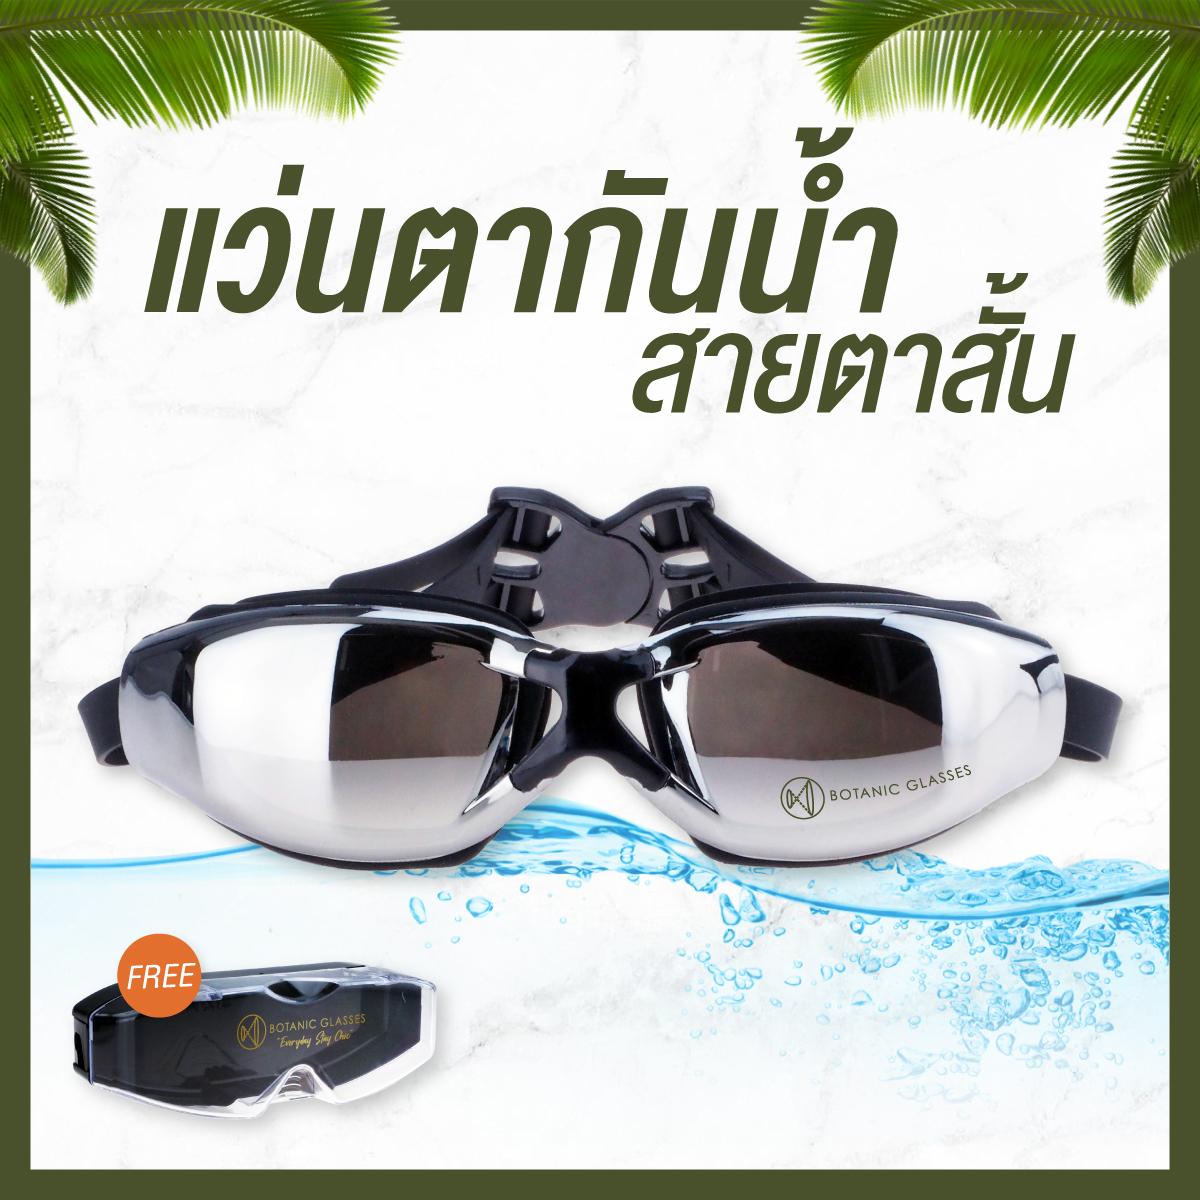 ภาพที่ให้รายละเอียดเกี่ยวกับ แว่นกันน้ำ สายตาสั้น 150 ถึง 800 แว่นว่ายน้ำ ของแท้ Botanic Glasses กัน UV 99% แว่นตาว่ายน้ำ Free กล่องแว่น